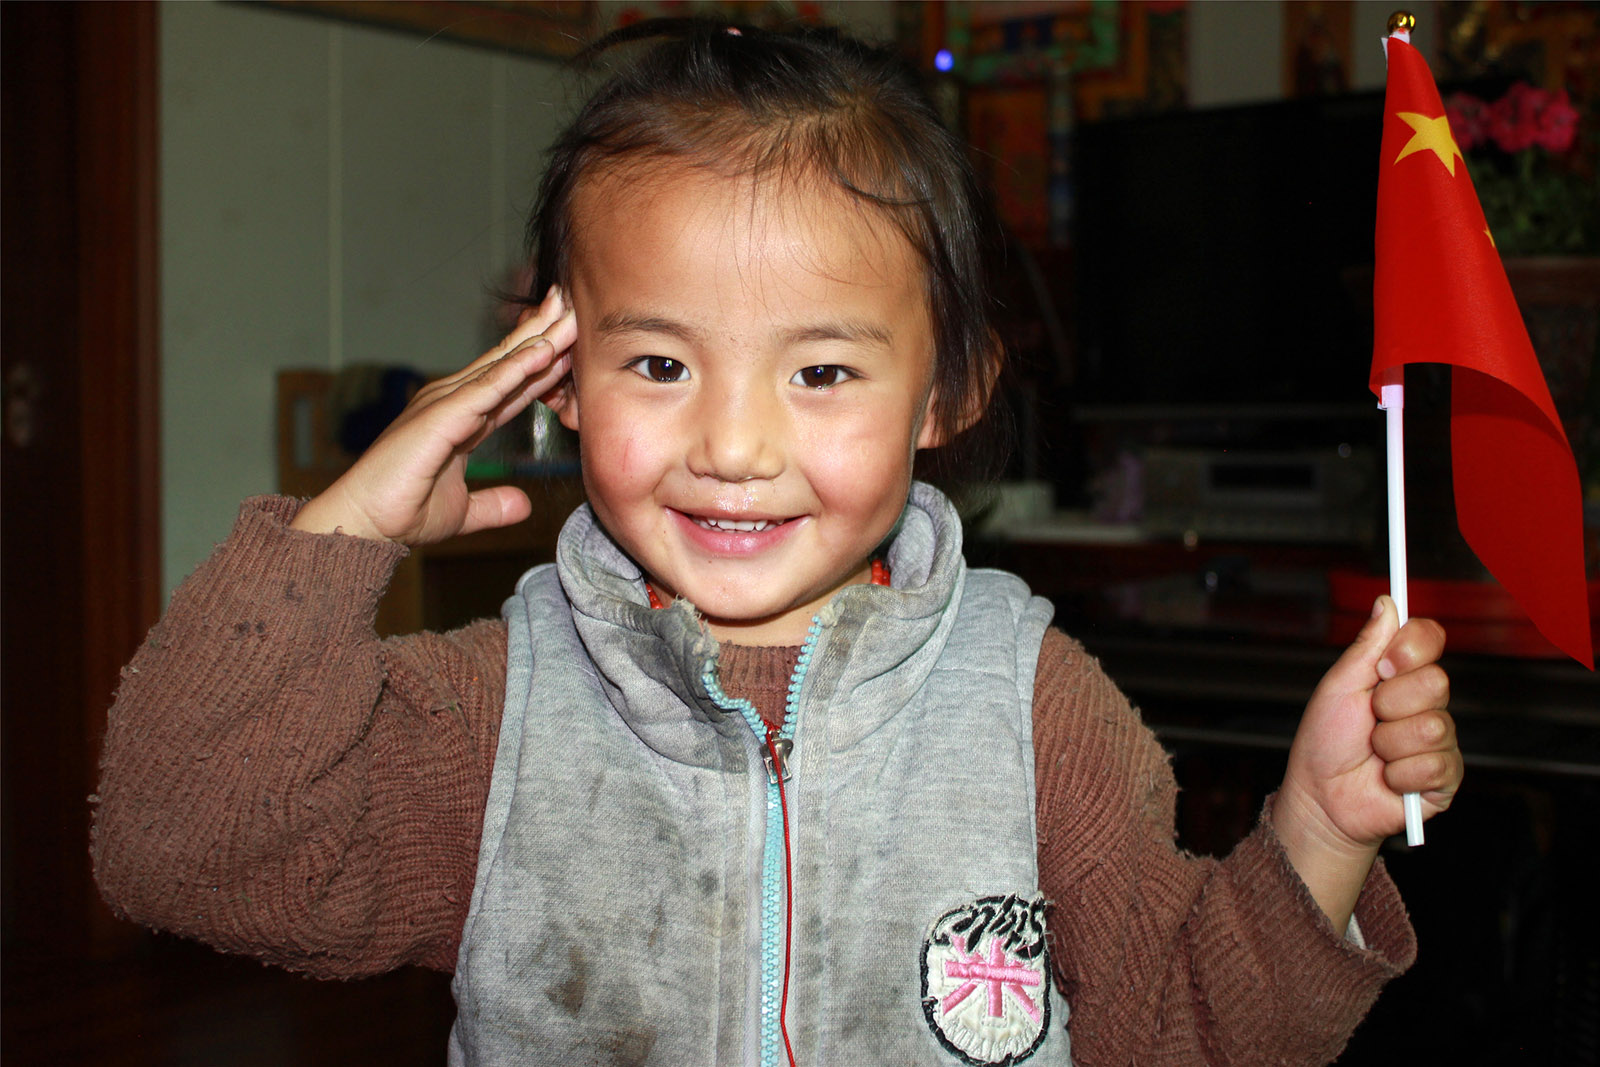 才保(高中組)青海《愛祖國》 2019年是祖國70華誕，生活在青藏高原玉樹牧區的小朋友手持五星紅旗向祖國敬禮。搜索復制